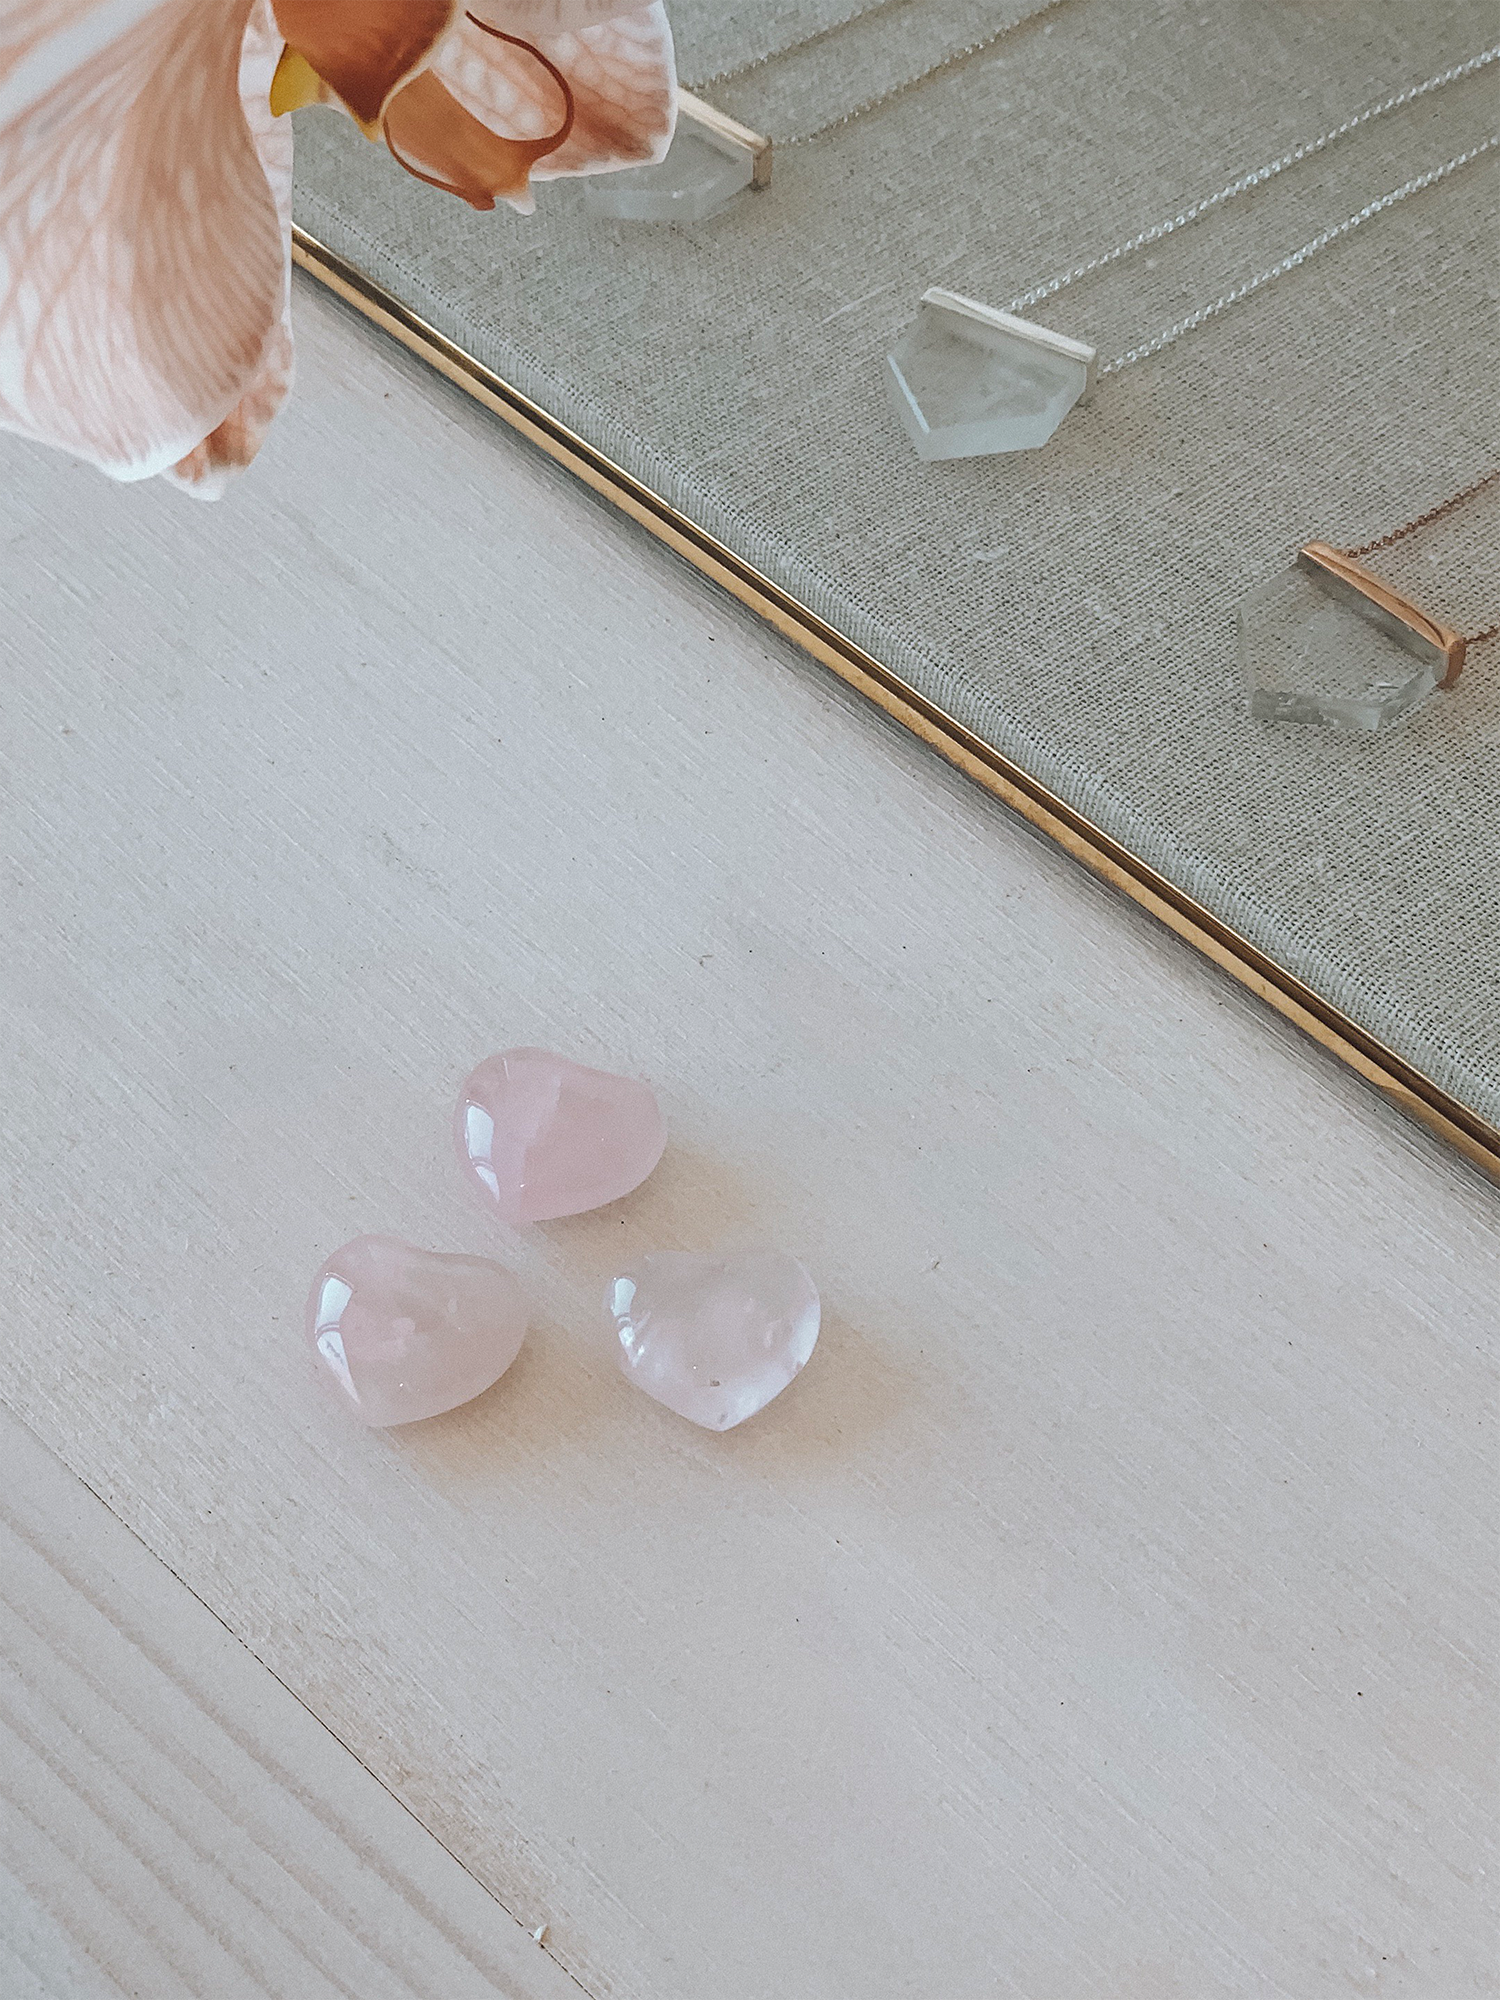 teeny tiny rose quartz heart